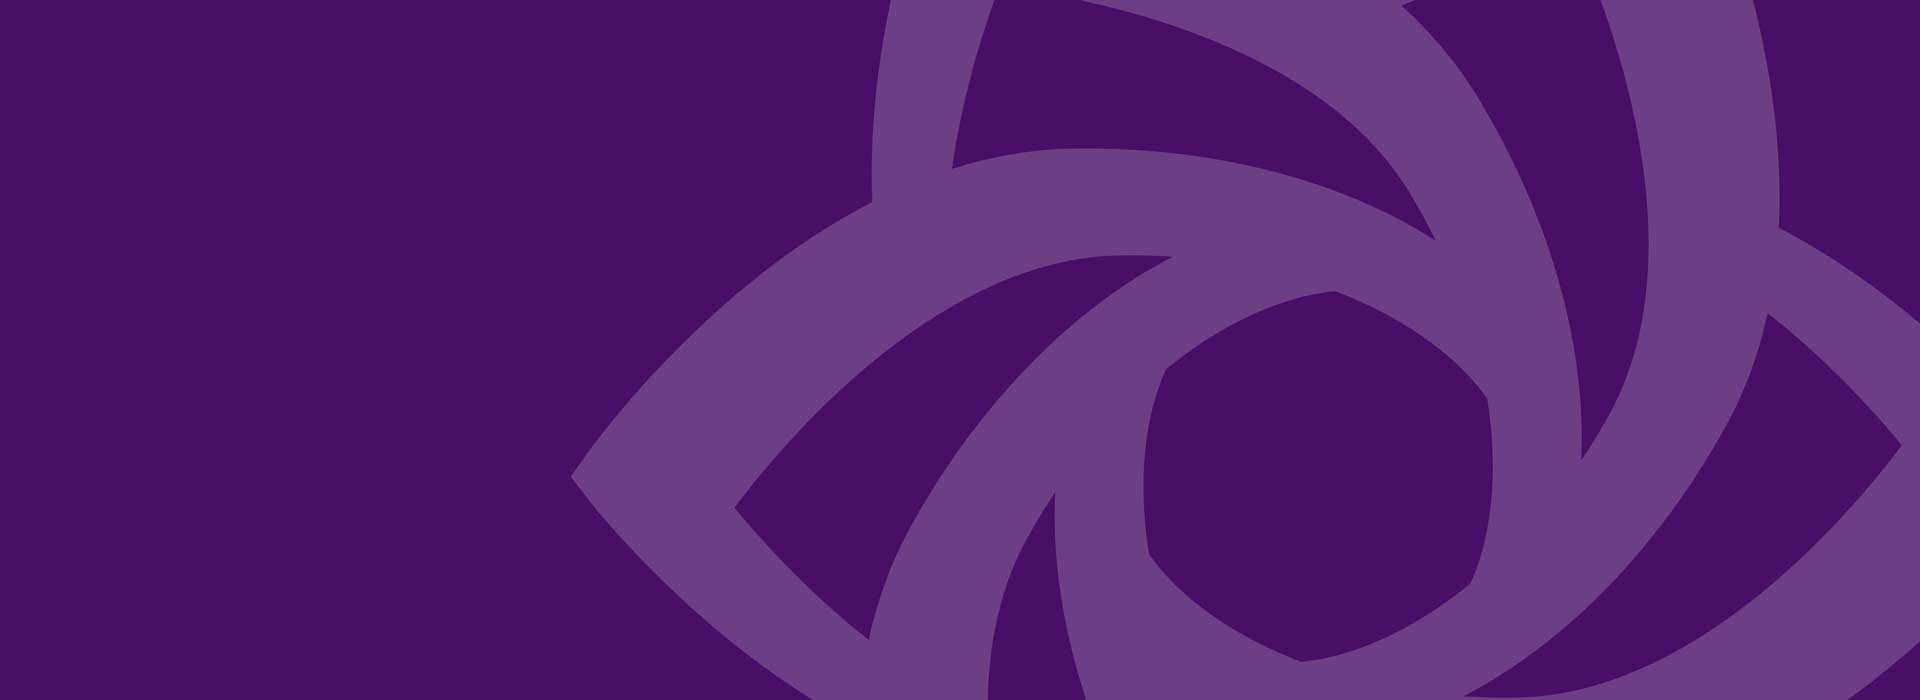 Little Flower logo on purple